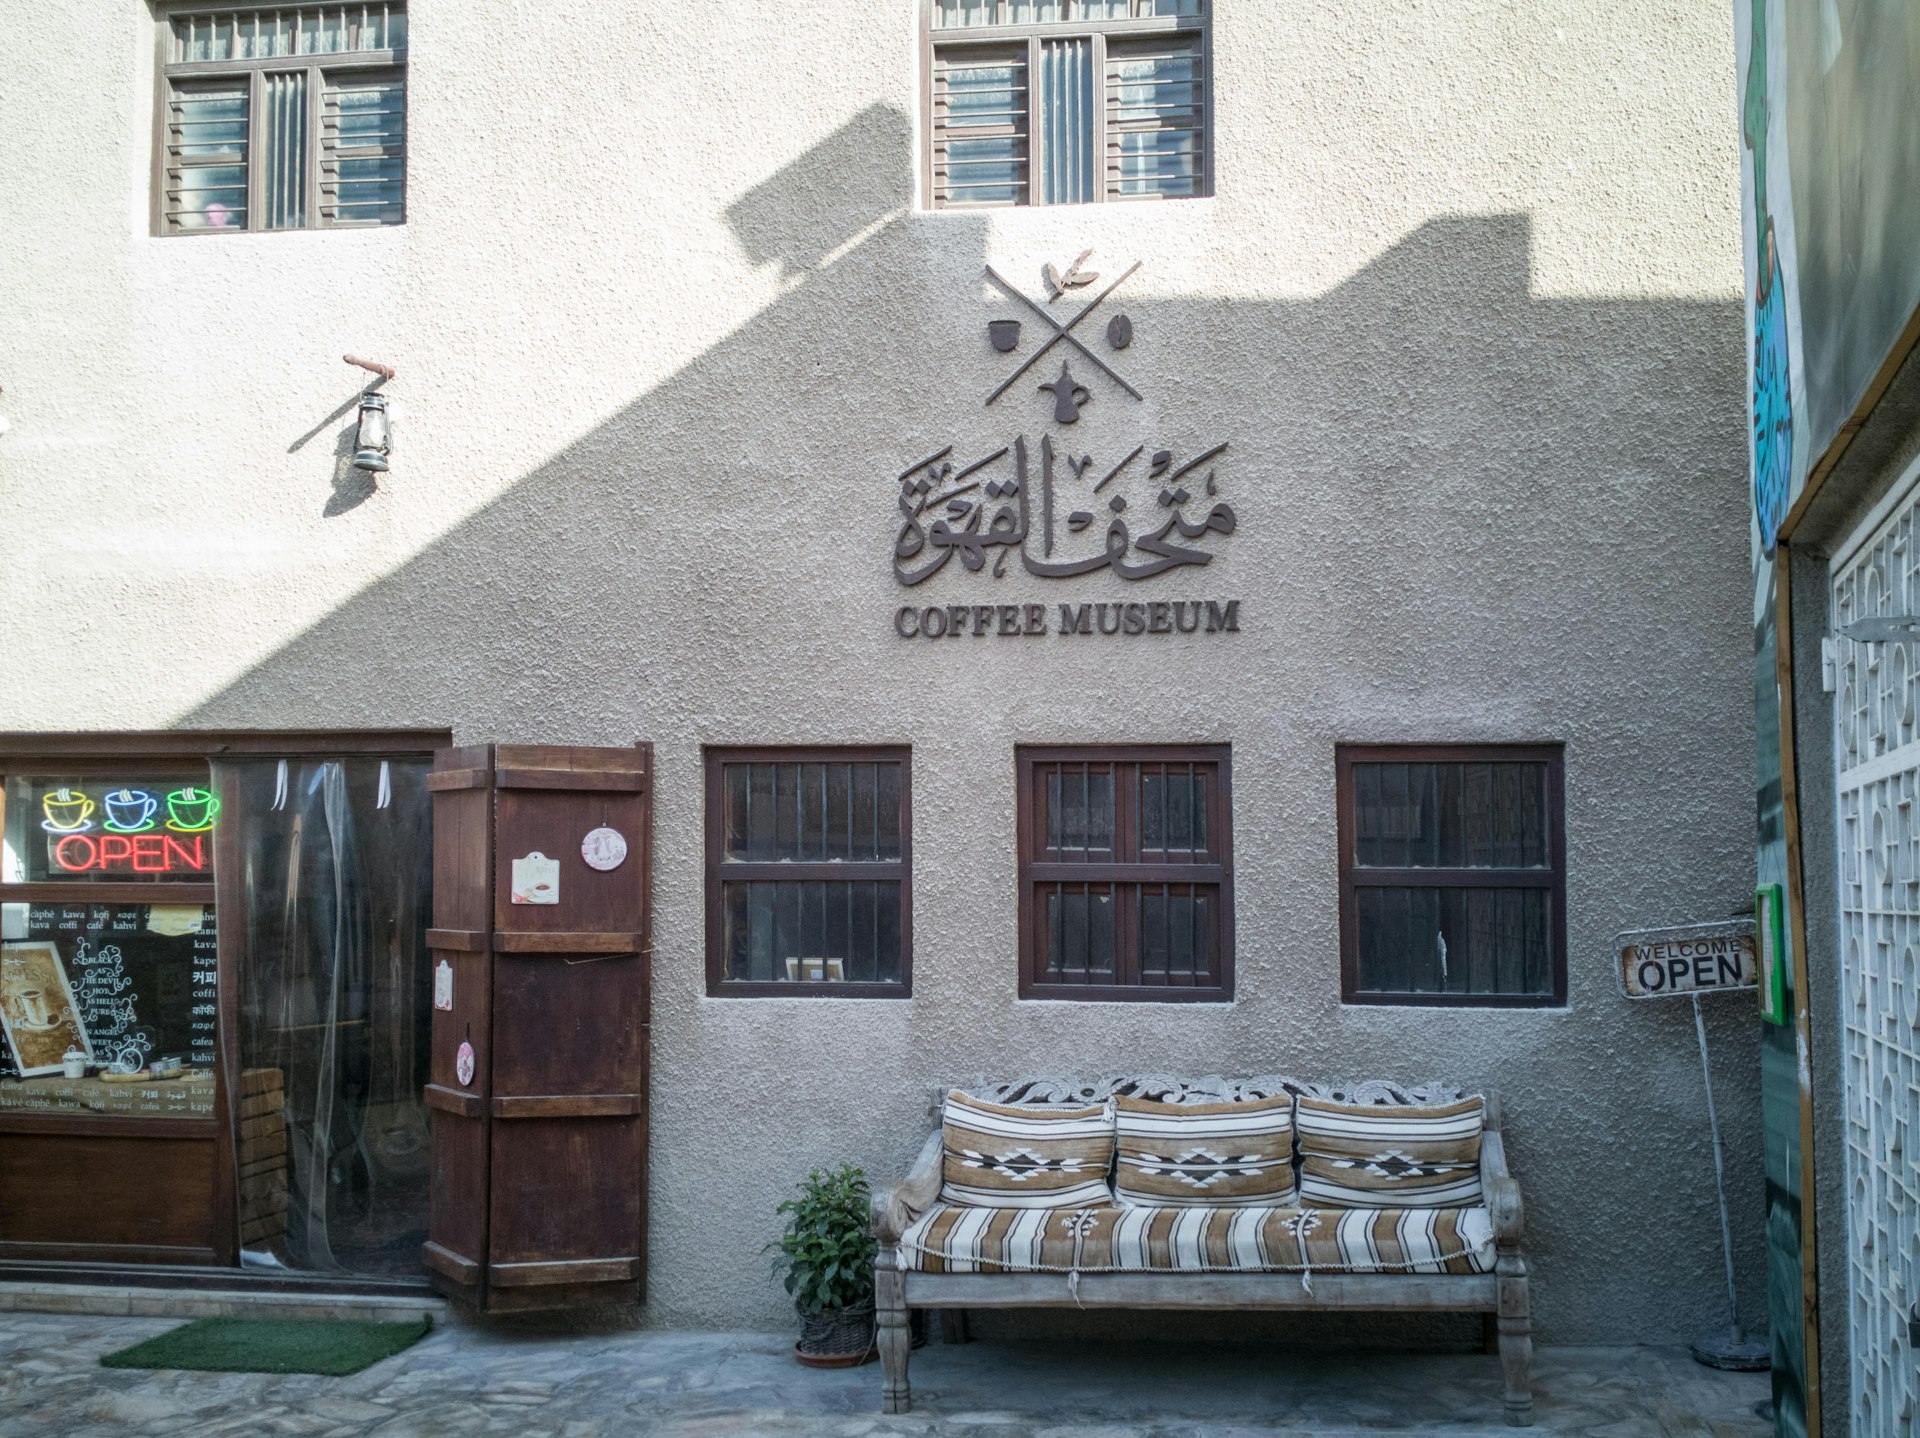 Exterior of the Coffee Museum in Dubai, United Arab Emirates